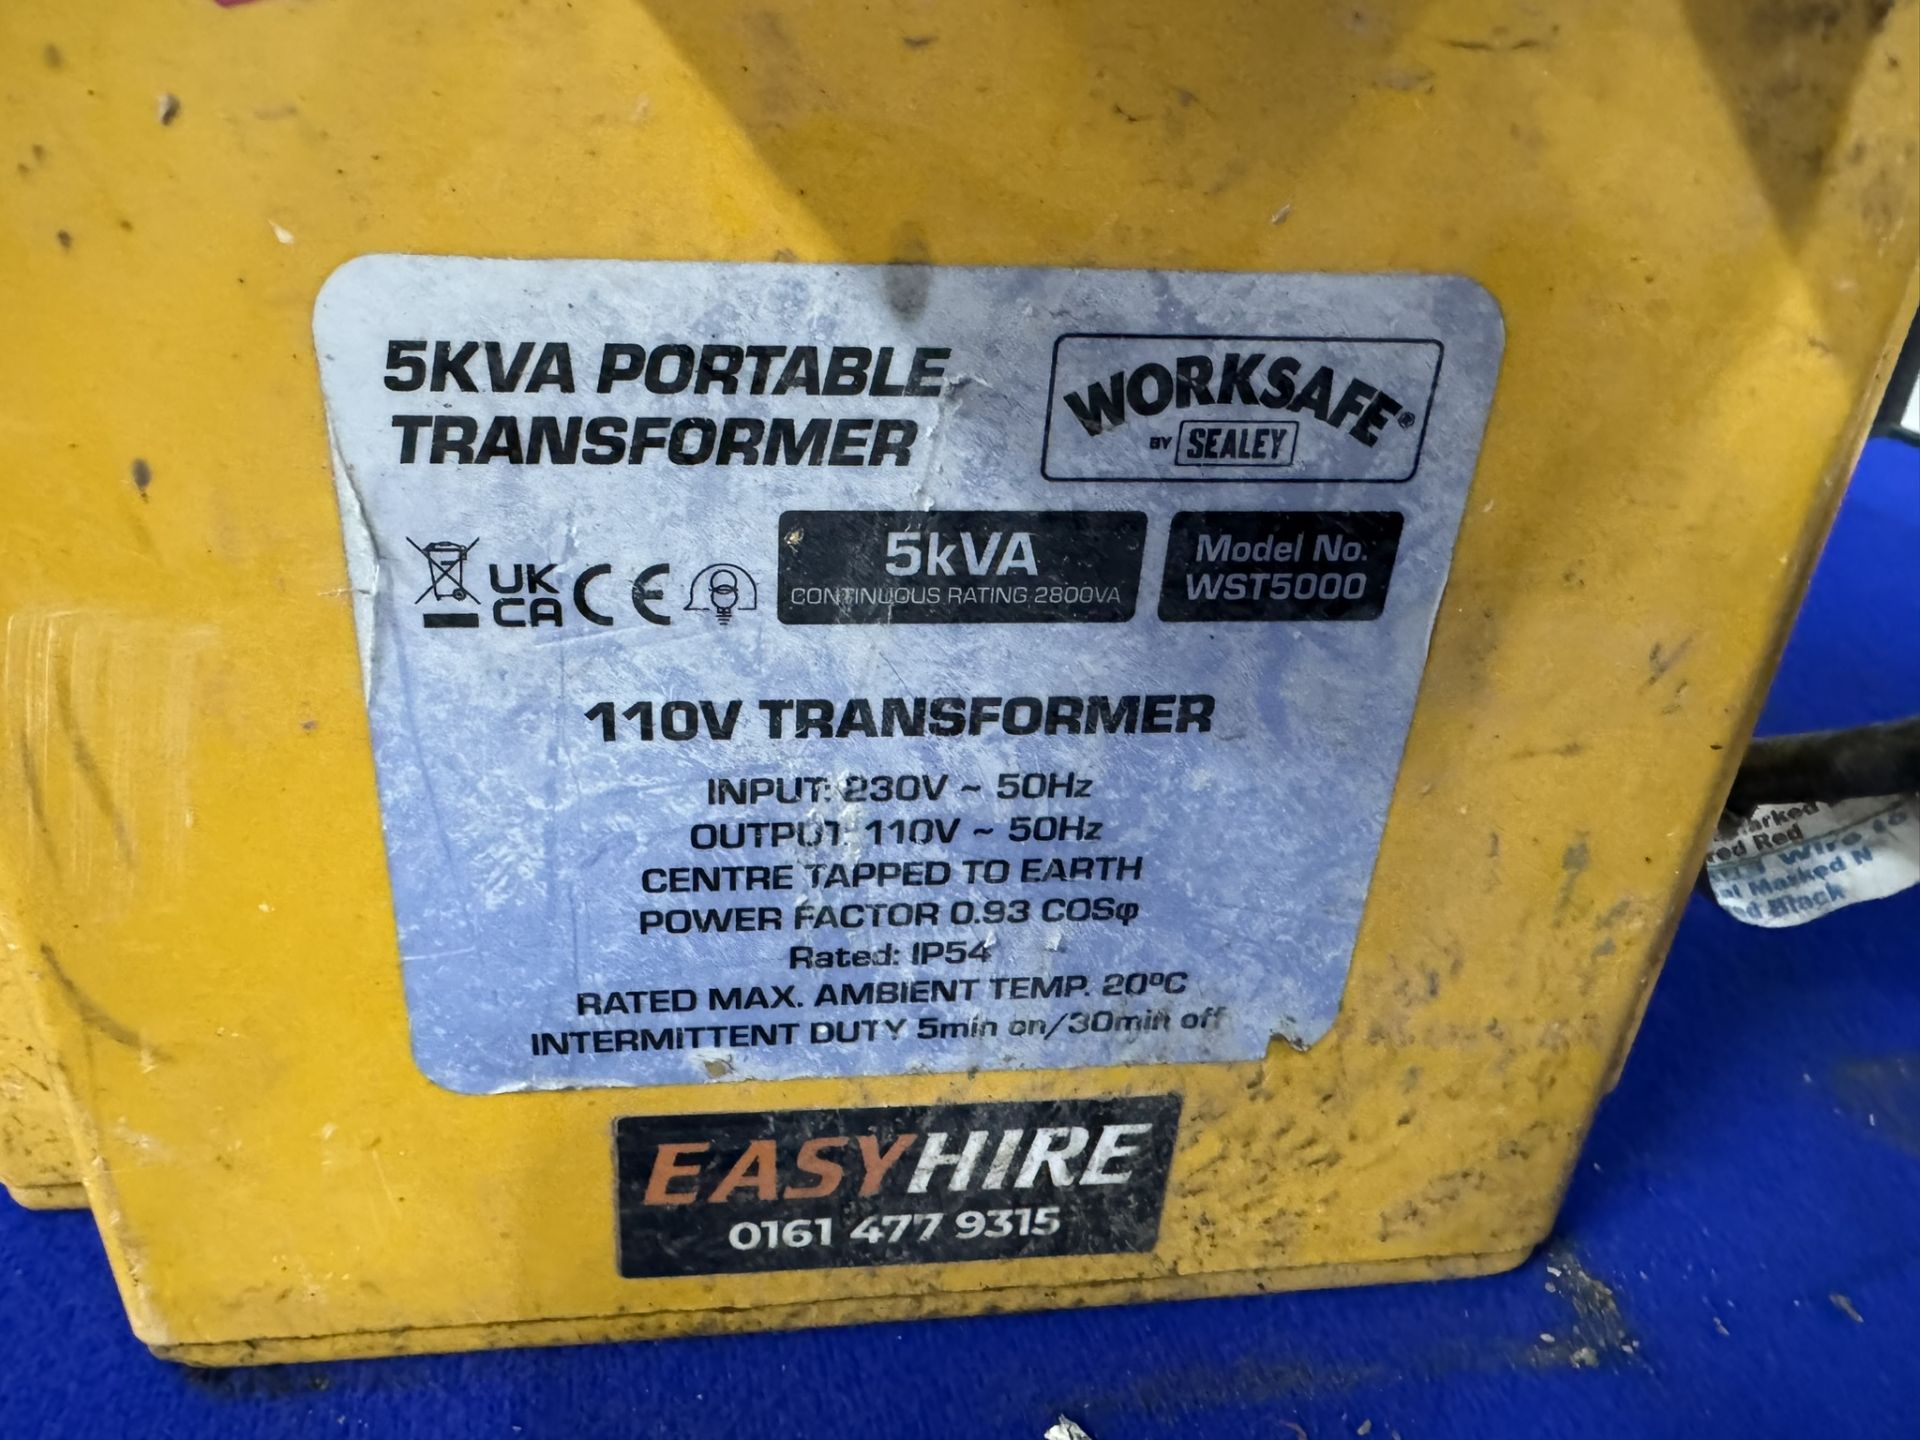 Worksafe Sealey 5KVA 110V Portable Transformer - Image 3 of 3